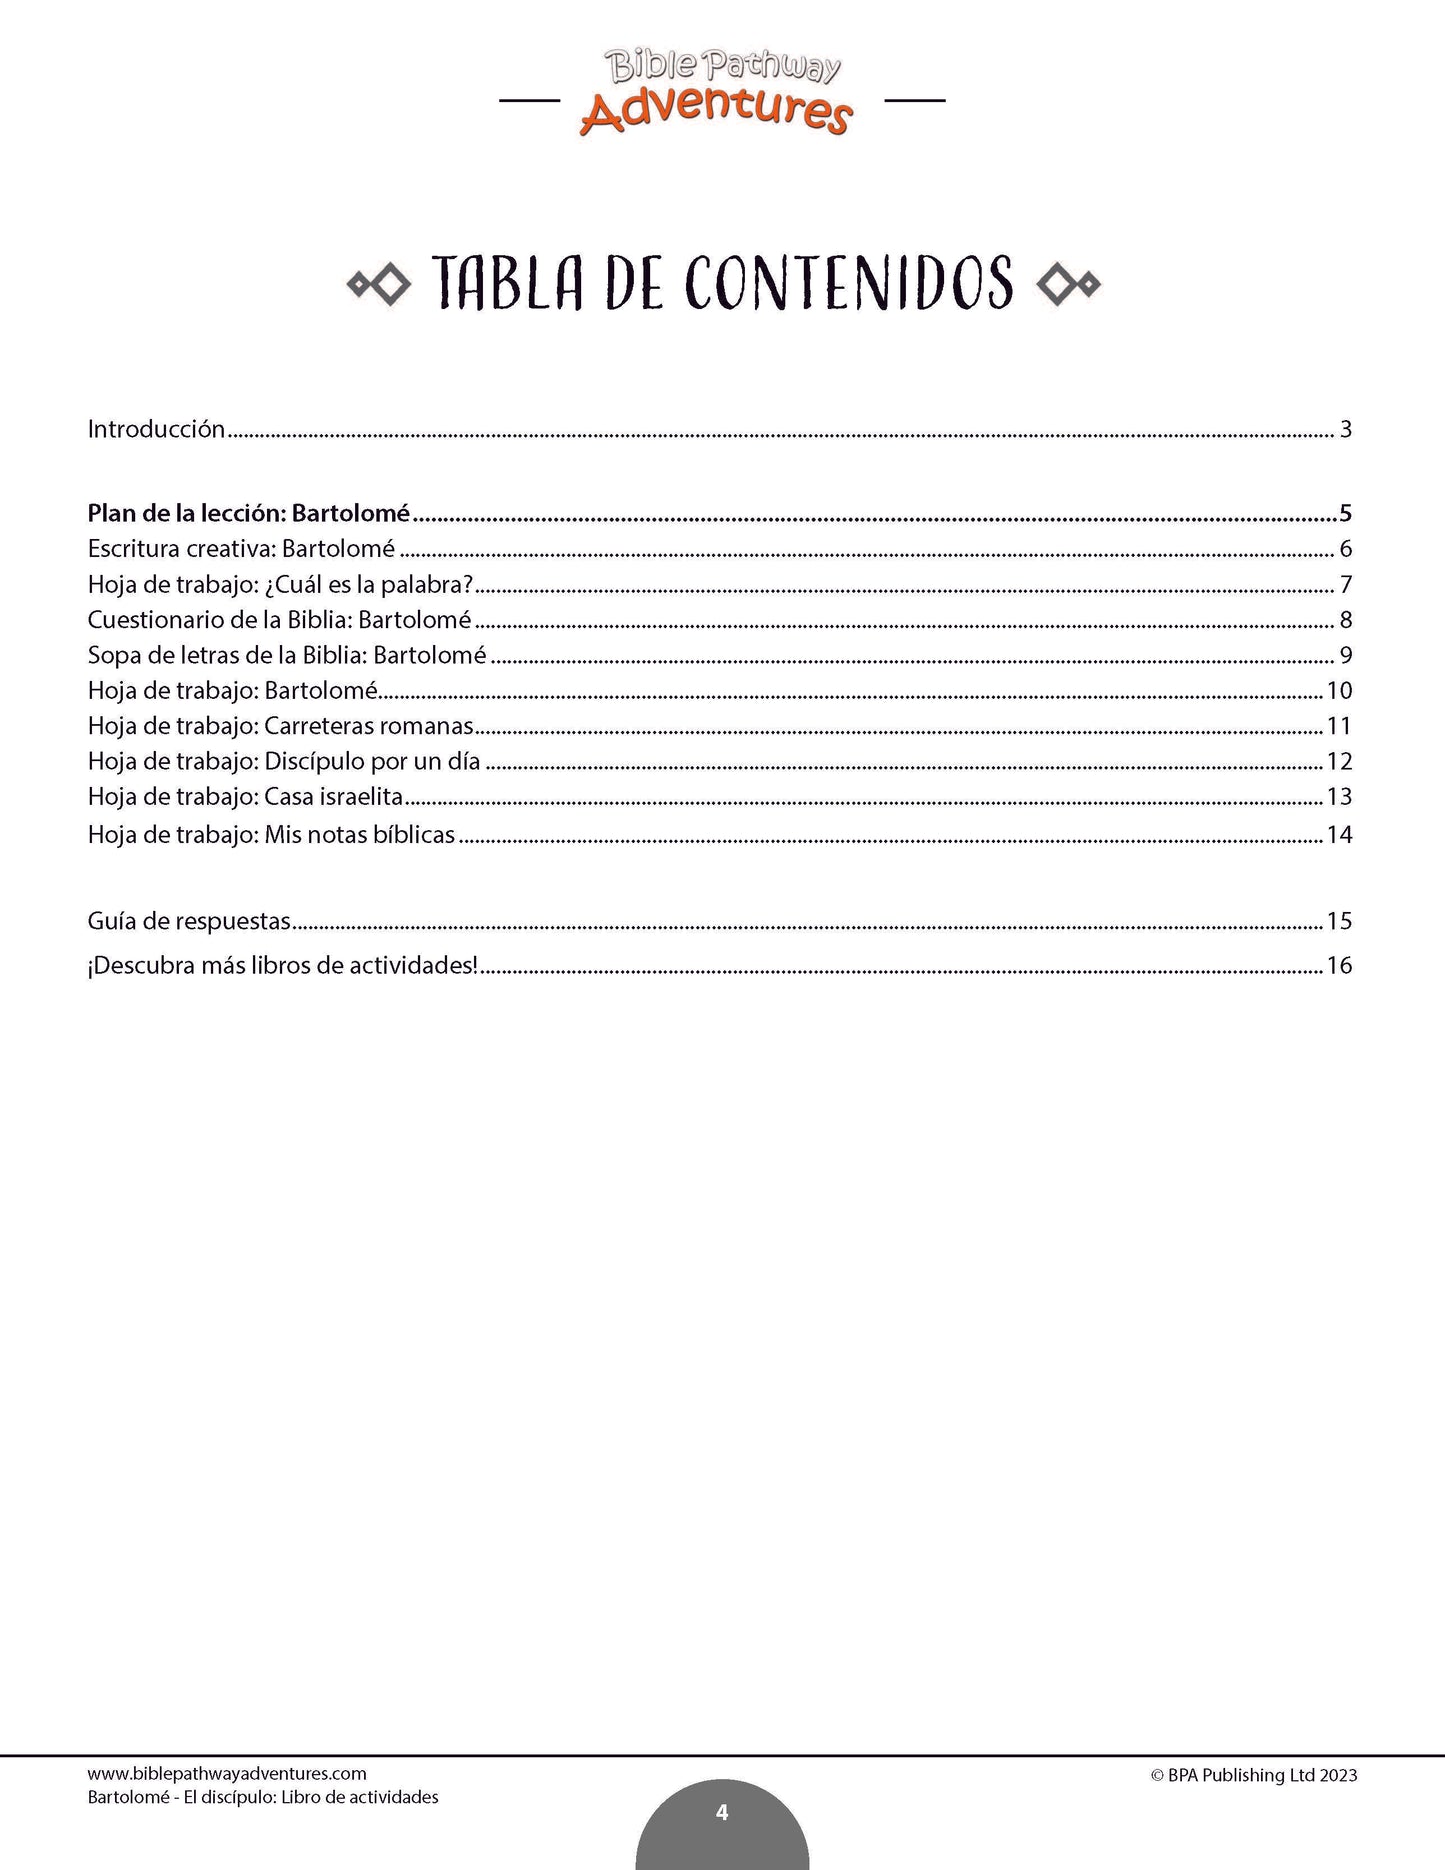 Bartolomé - El discípulo: Libro de actividades (PDF)